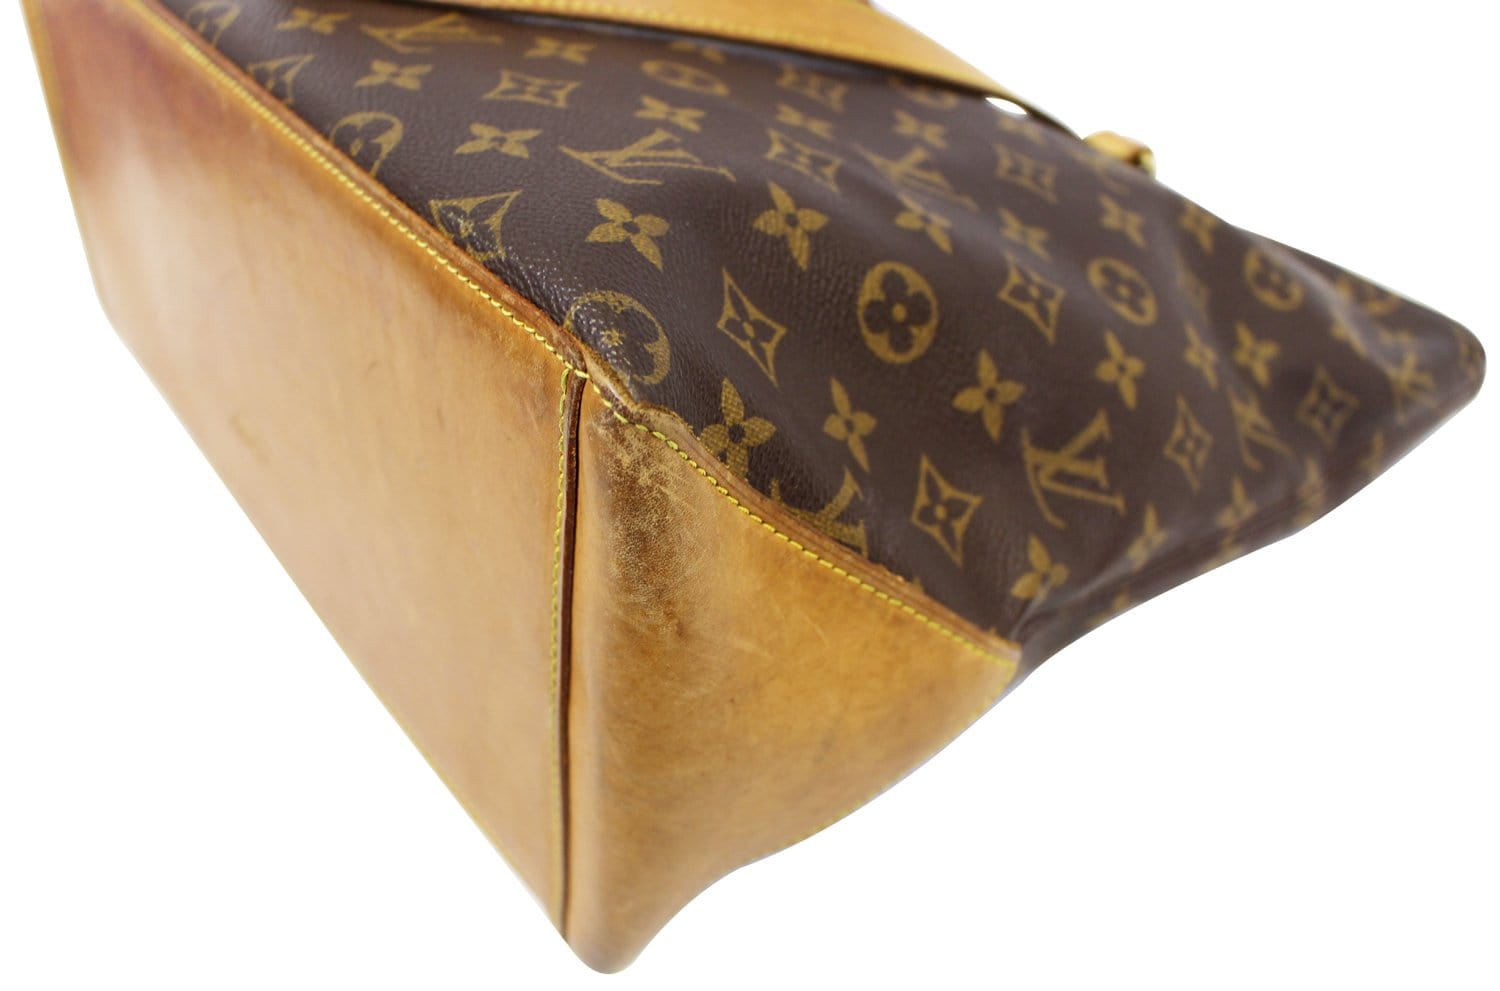 Authentic Louis Vuitton Monogram Cabas Mezzo Tote Bag M51151